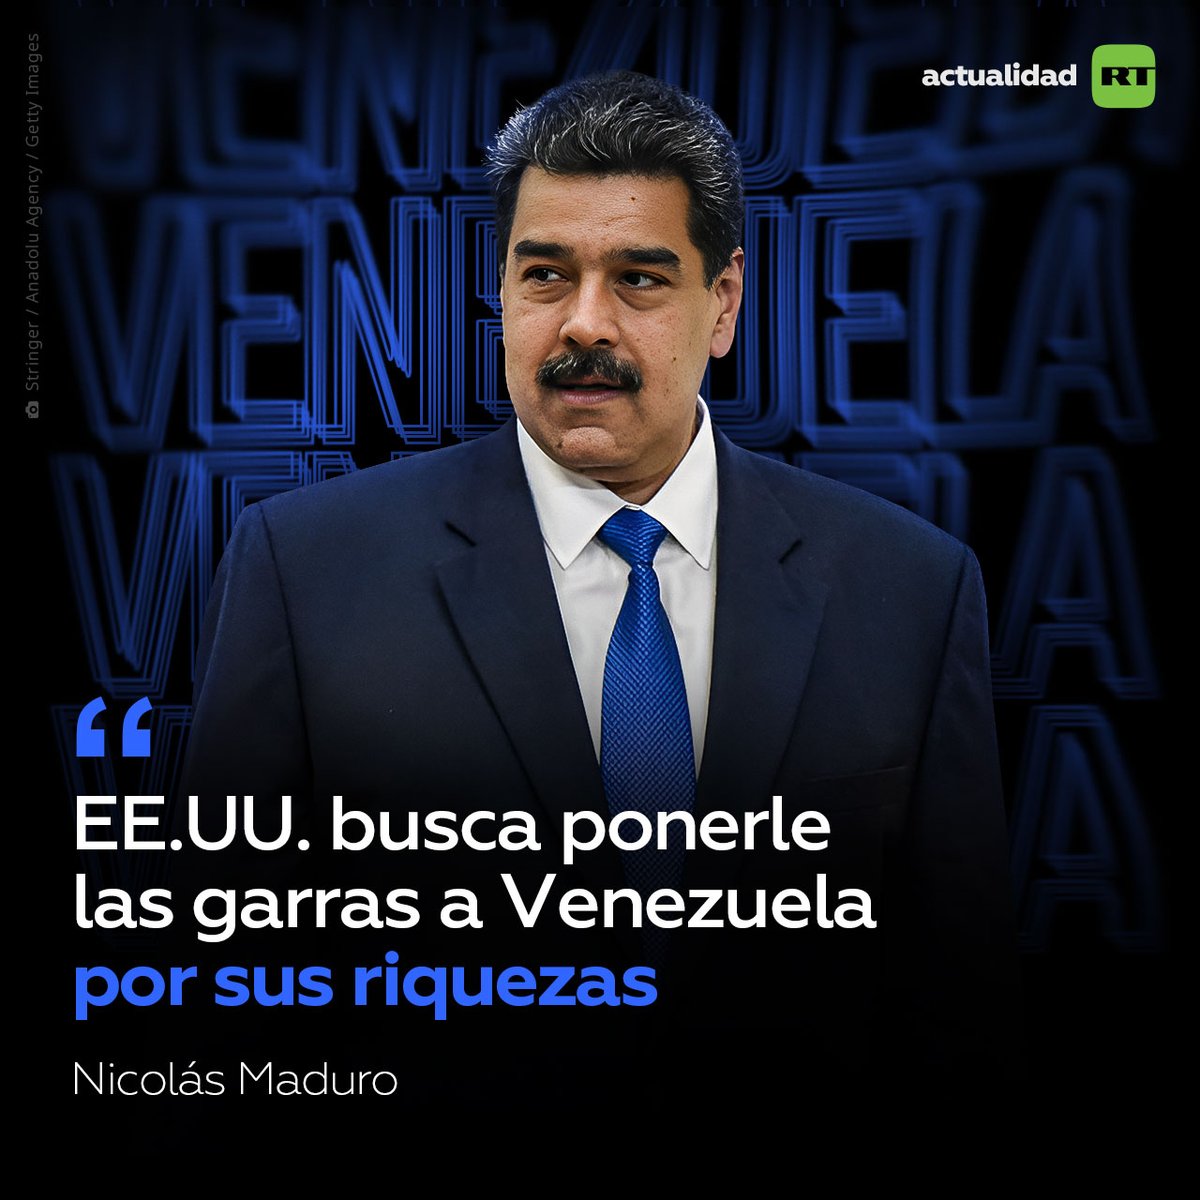 🇻🇪 El presidente de Venezuela, Nicolás Maduro, ha declarado este sábado que la campaña para los comicios presidenciales que se celebrarán en el país suramericano el próximo 28 de julio acapara tanta atención en el extranjero, sobre todo de Estados Unidos, que no ve la hora de